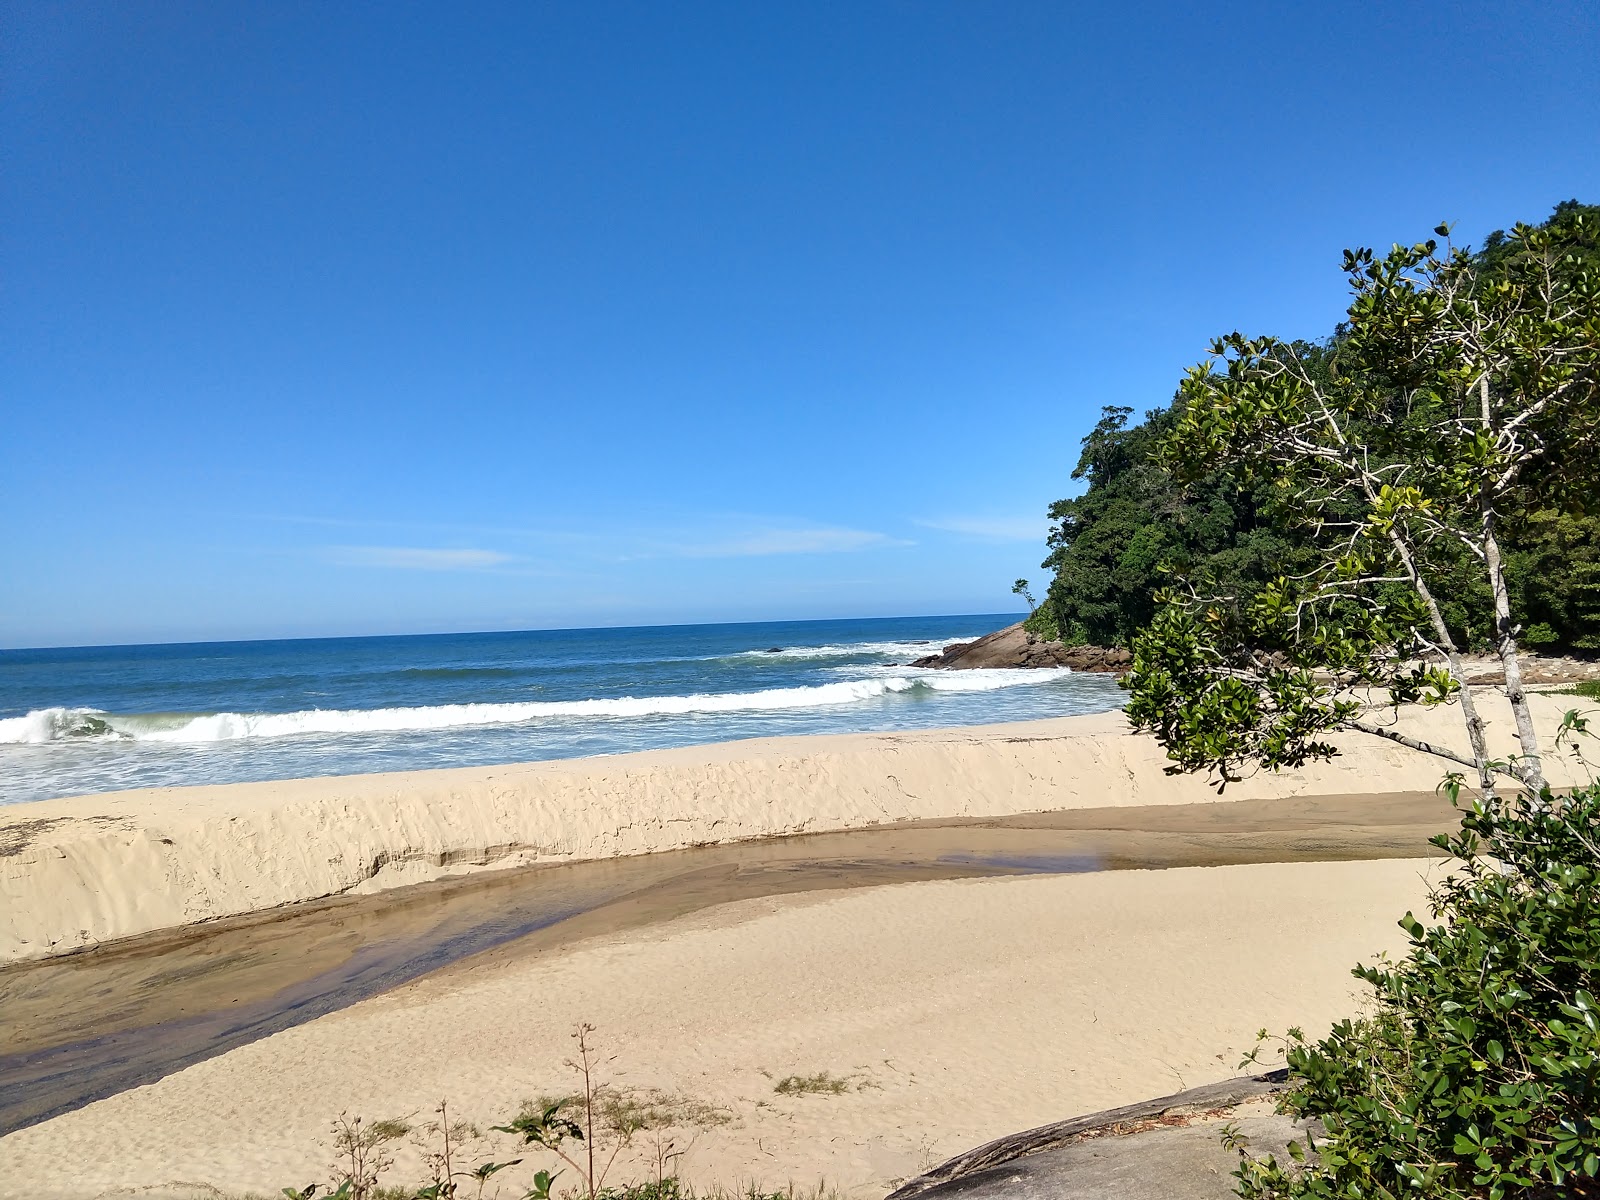 Foto di Praia da Meia Lua ubicato in zona naturale